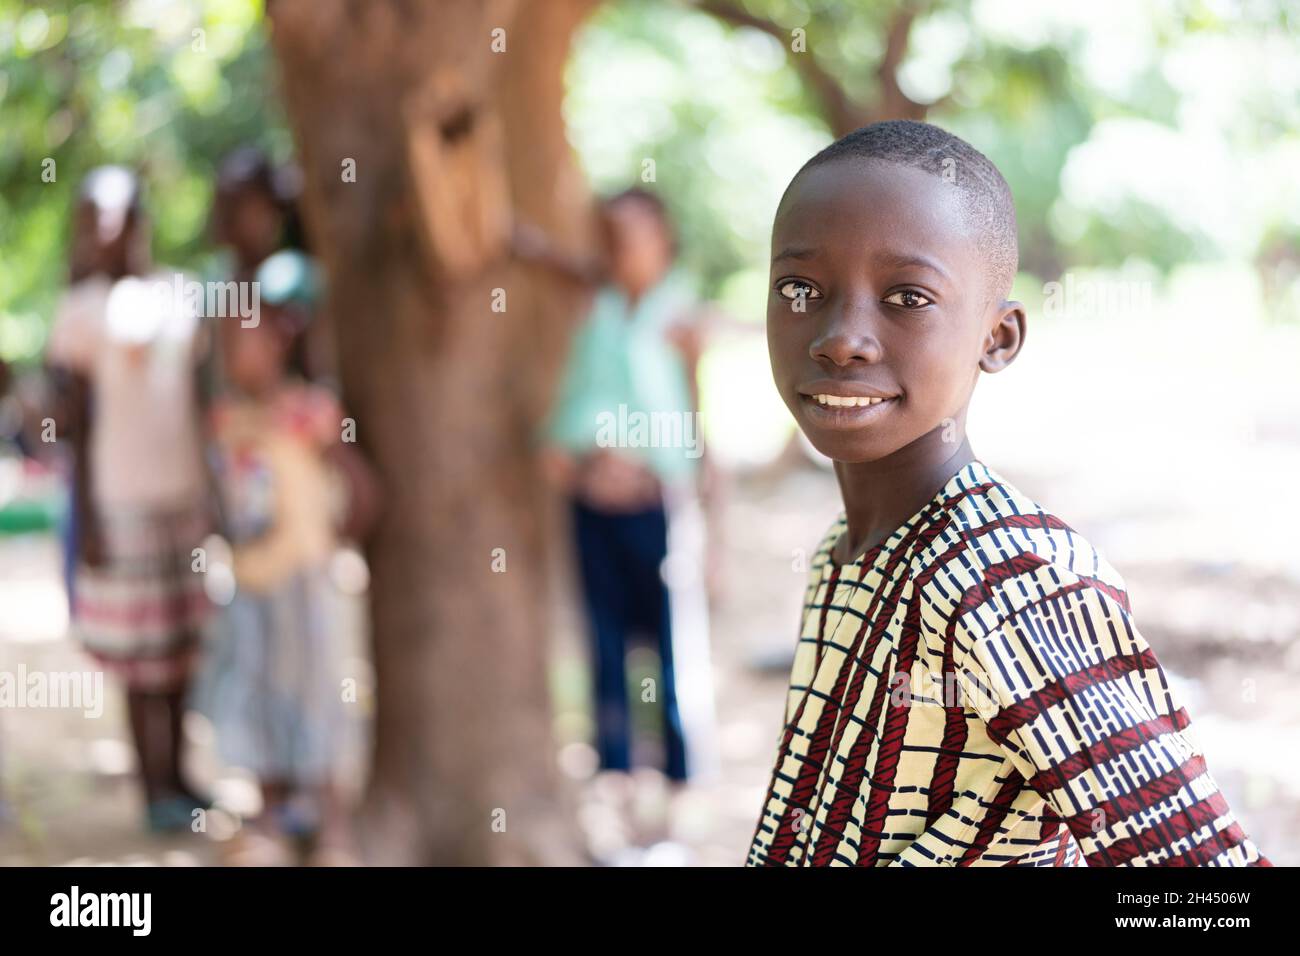 Portrait d'un adorable garçon africain noir aux cheveux fraîchement rasés, souriant à l'appareil photo, avec un groupe d'enfants en arrière-plan Banque D'Images